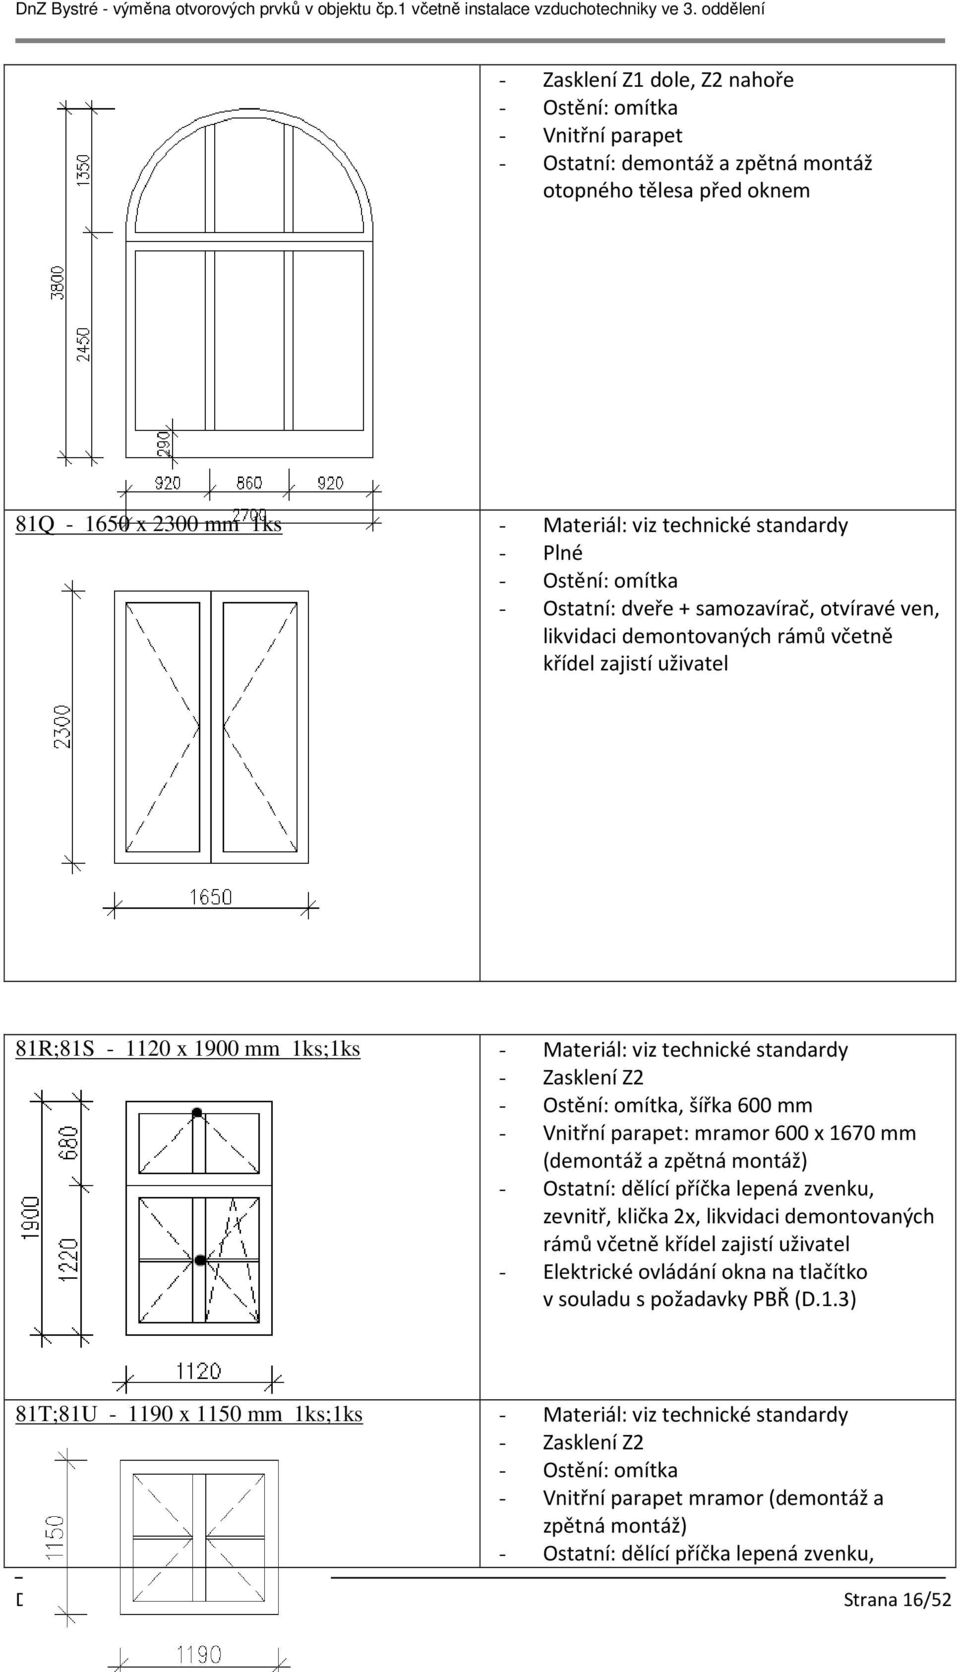 Vnitřní parapet: mramor 600 x 1670 mm (demontáž a zpětná montáž) zevnitř, klička 2x, likvidaci demontovaných rámů včetně křídel zajistí uživatel - Elektrické ovládání okna na tlačítko v souladu s